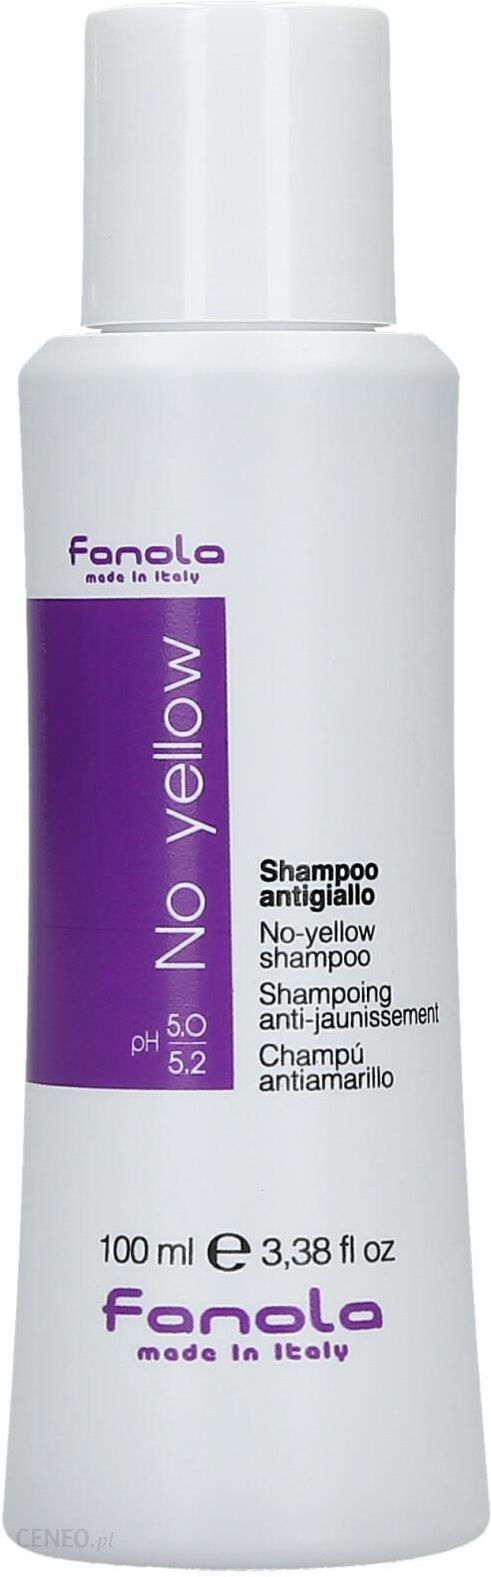 gdzie kupić szampon no yellow